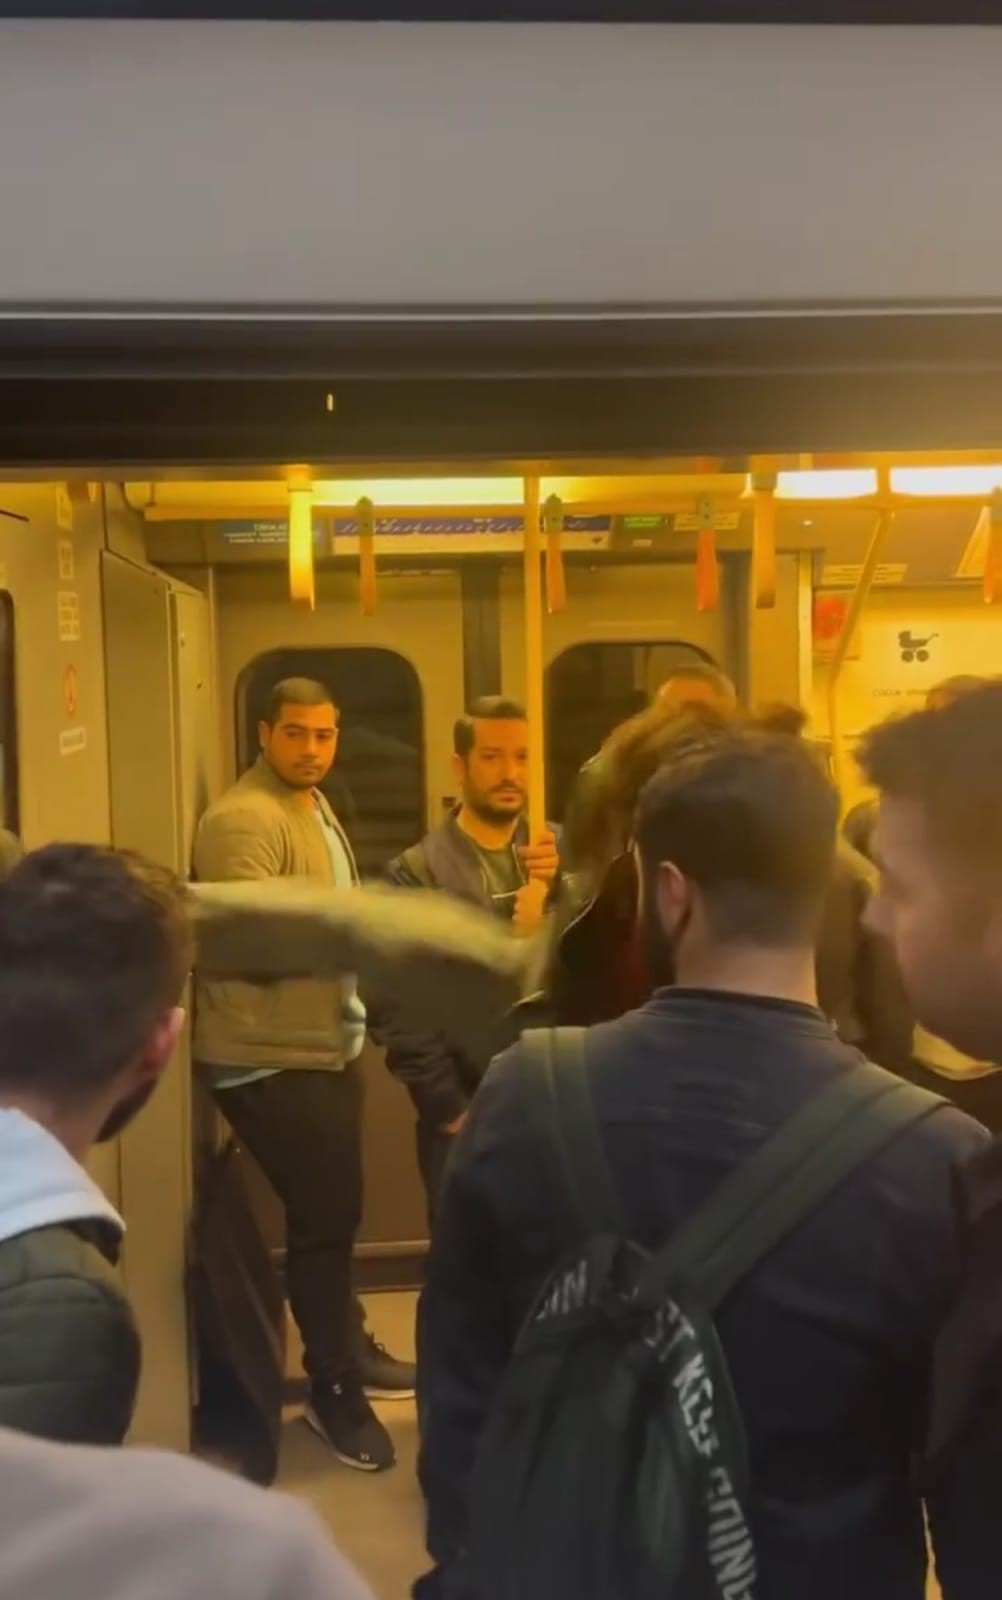 İzmir'de Metro Kapılarını Tekmeleyip Makinisti Dövmeye Kalktılar (3)